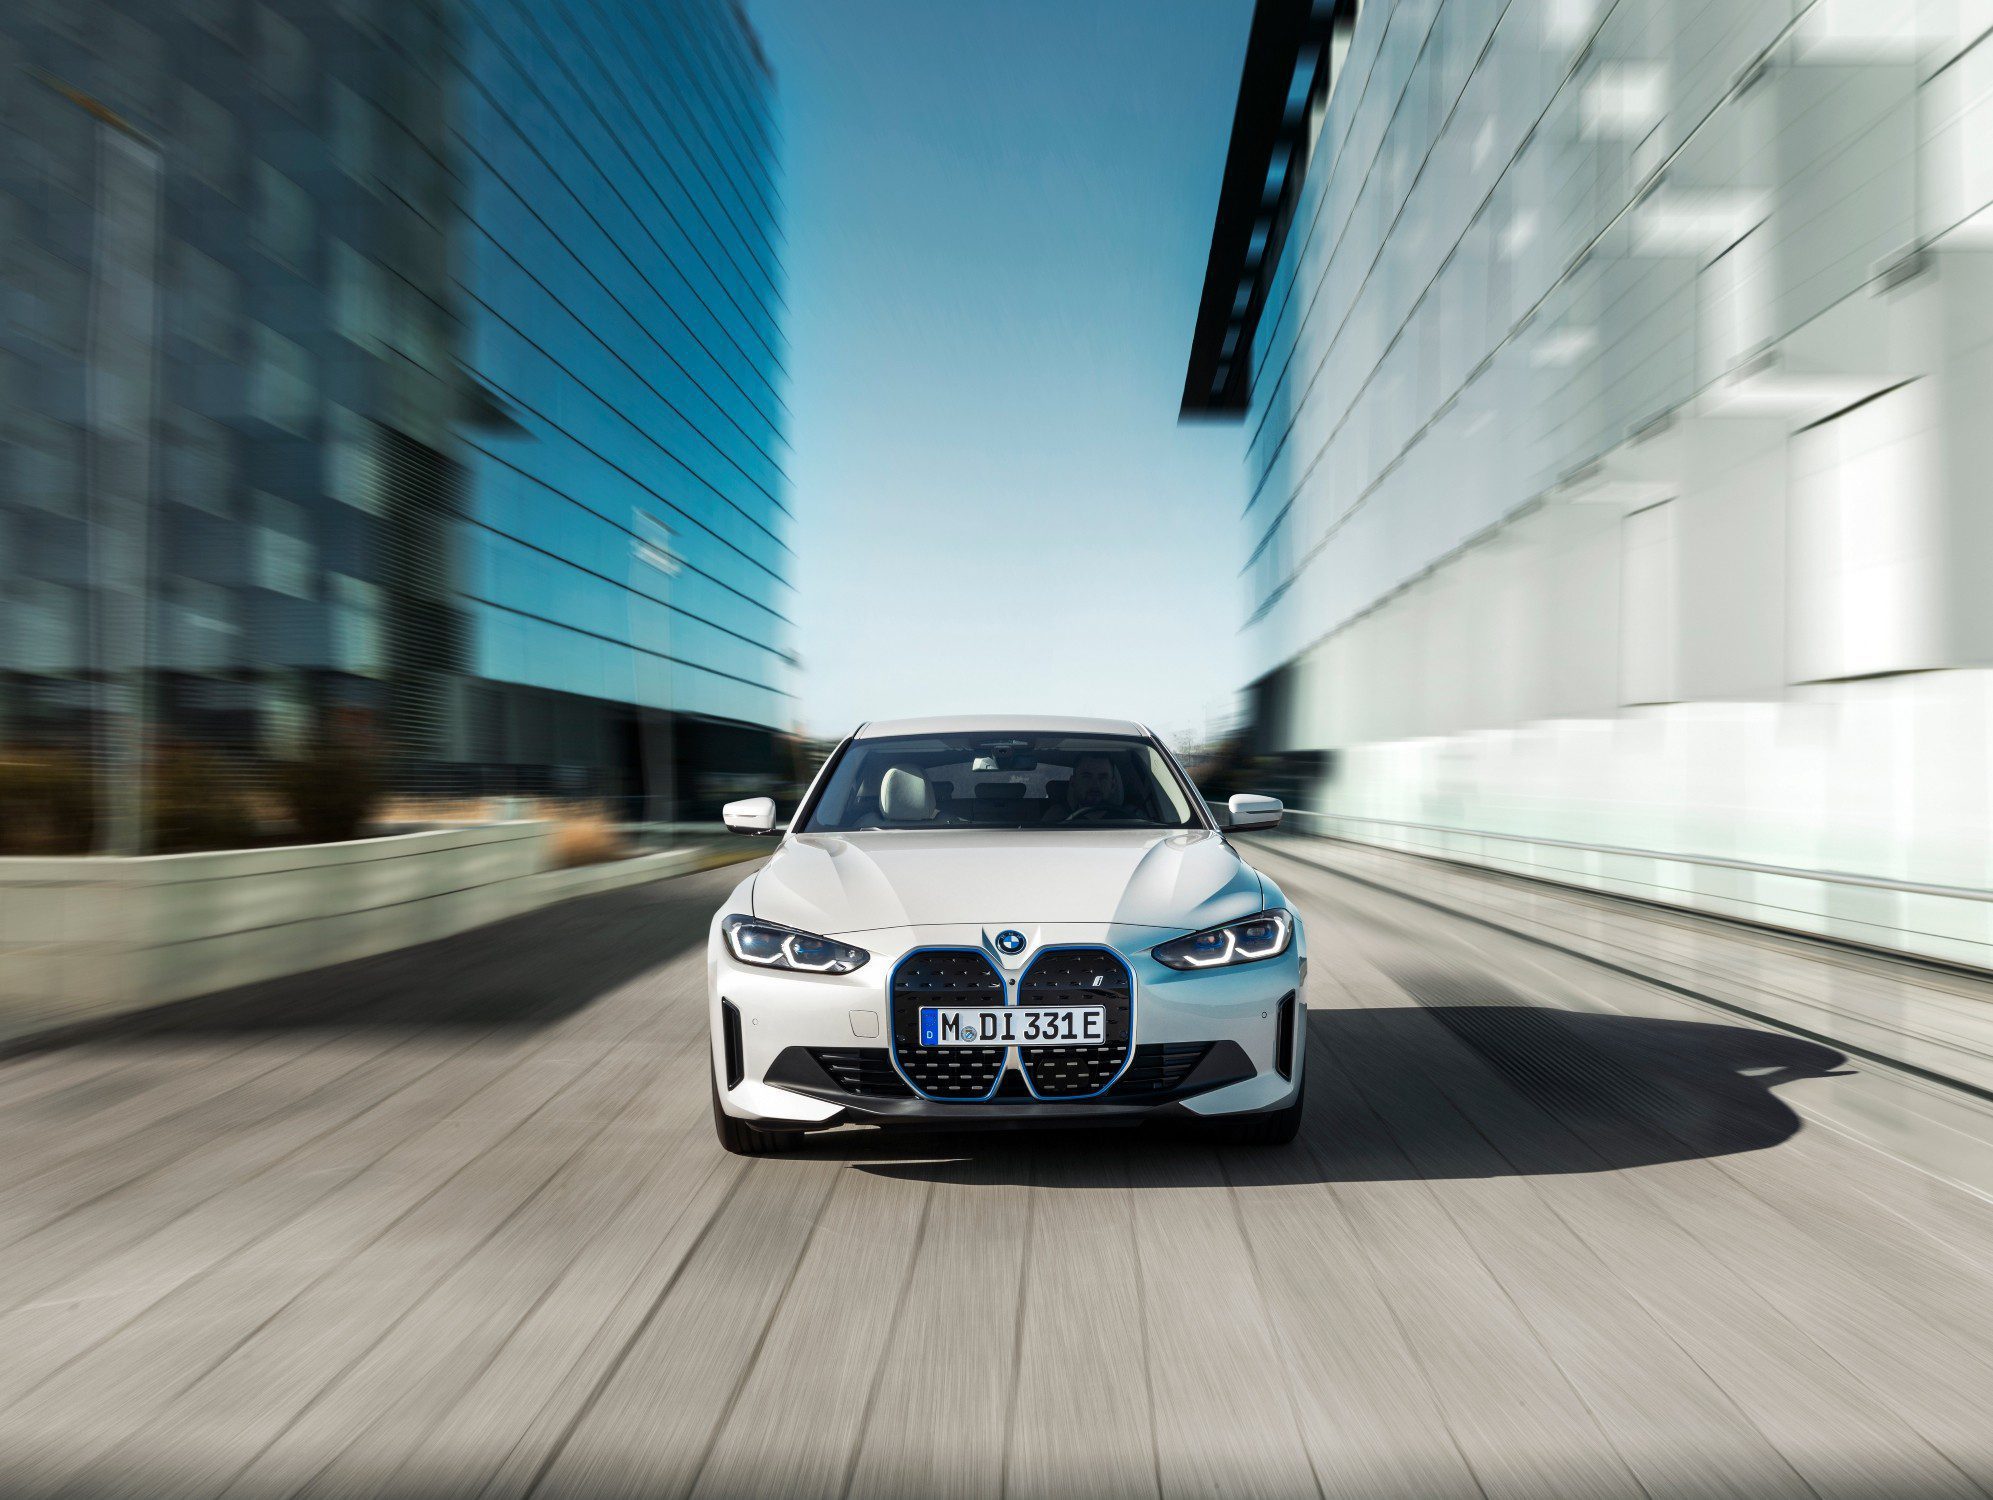 El BMW i4, de gran espíritu deportivo, cuenta con una potencia de 530 CV permitiendo una potente aceleración y una autonomía estimada de hasta 590 kilómetros. ¡Descúbrelo!